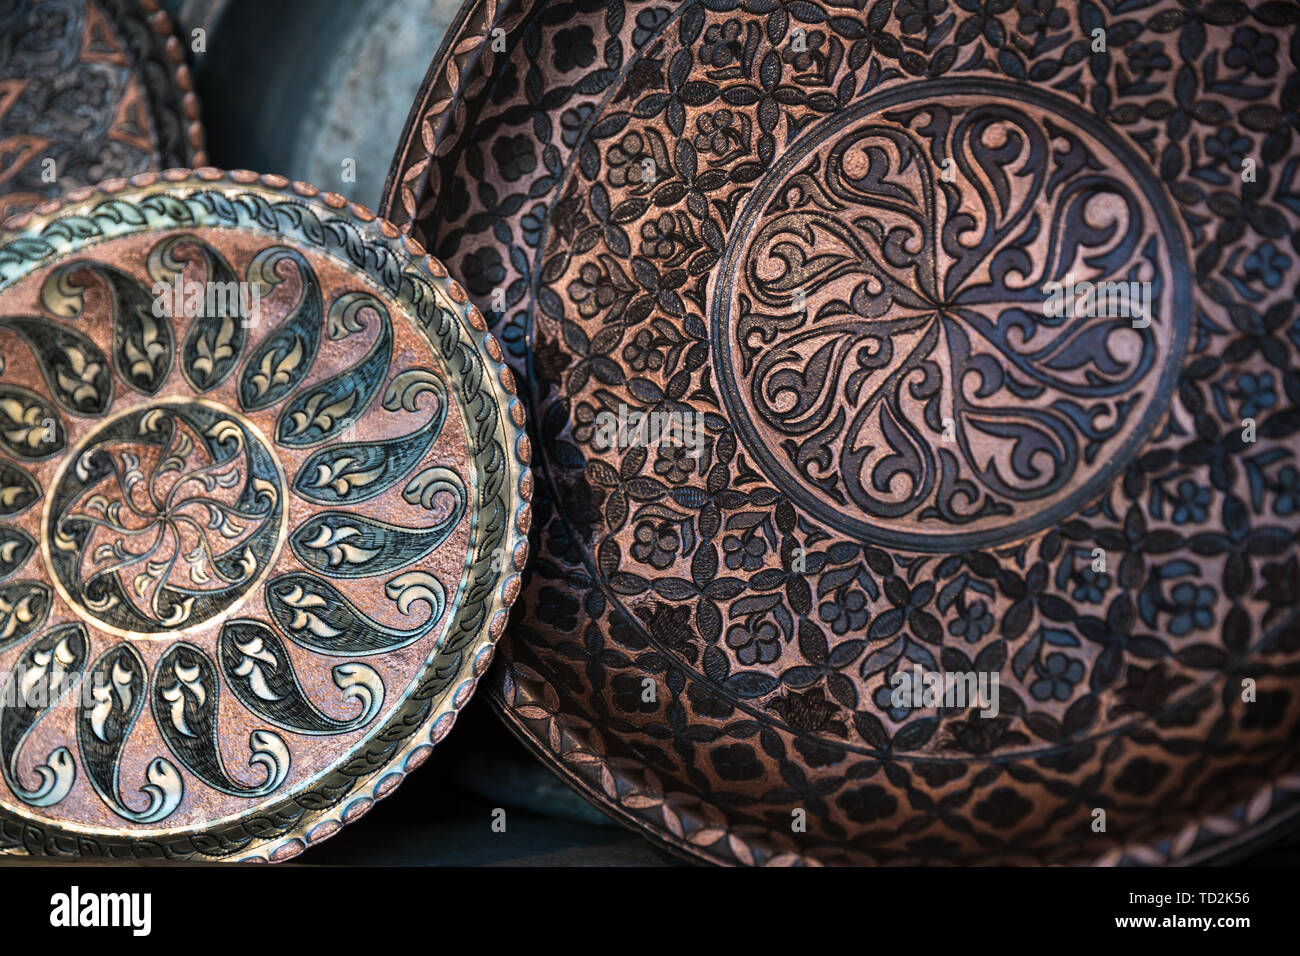 Plaque en cuivre artisanal, fabriqué traditionnellement en Lagich, Azerbaïdjan. La plaque à la main dans une boutique de souvenirs. Banque D'Images